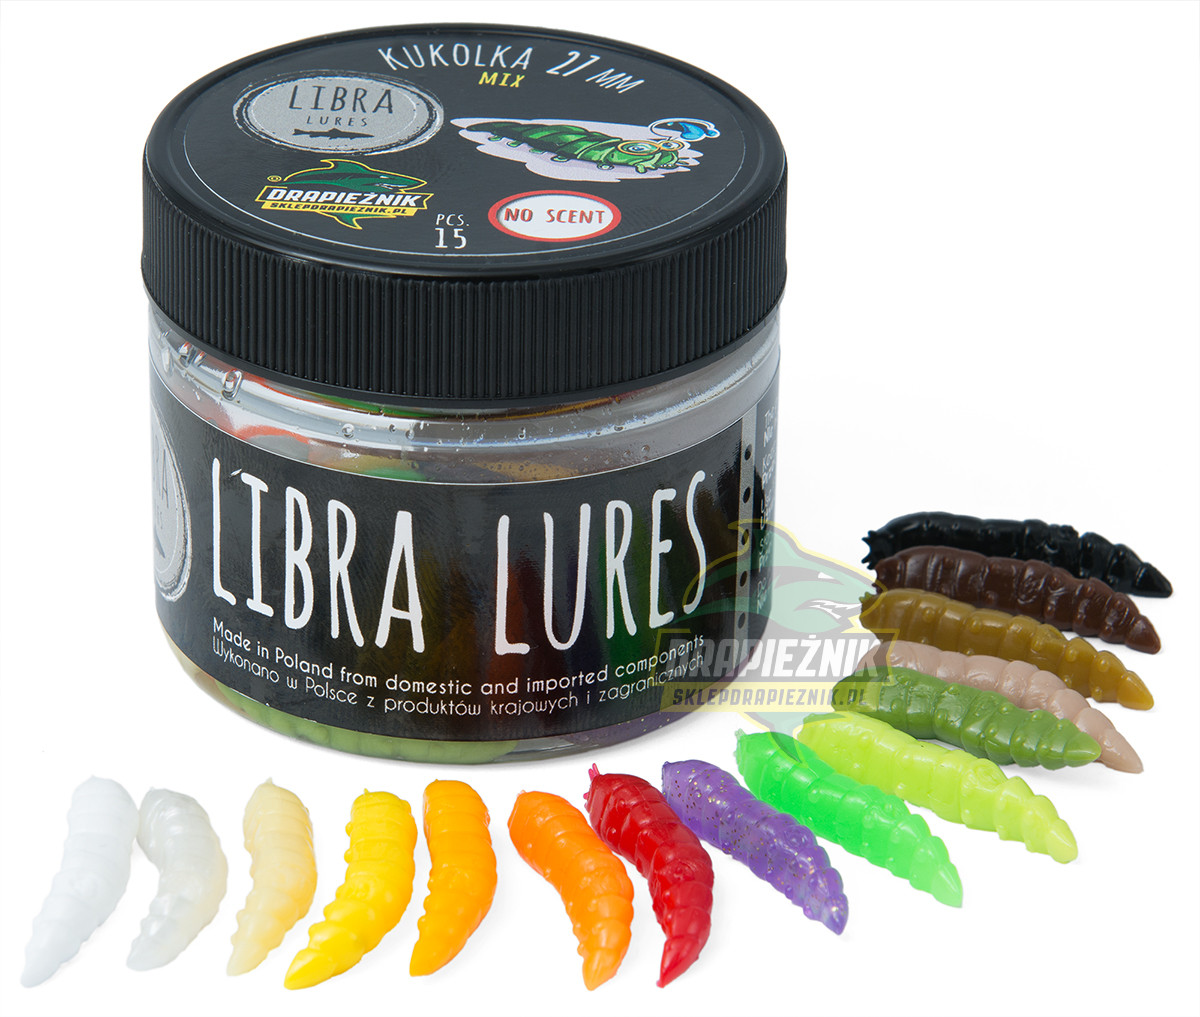 Libra Lures zestaw przynęt - Kukolka 2.7cm - MIX